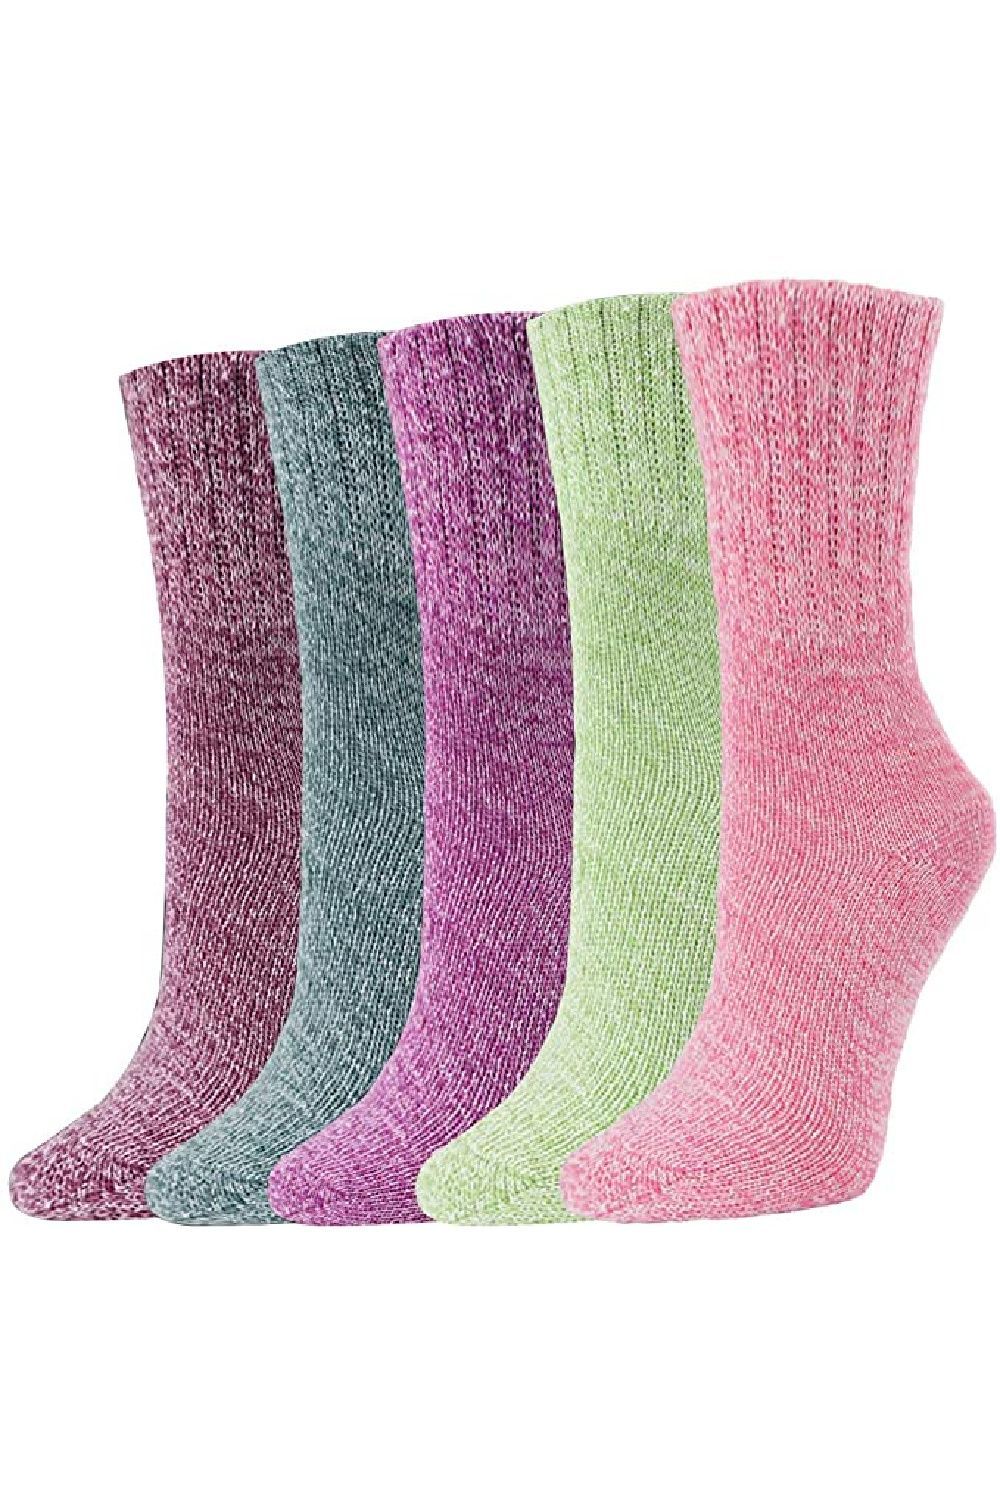 20 of the Best Warm Socks for Women in 2023 - Best Warm Socks